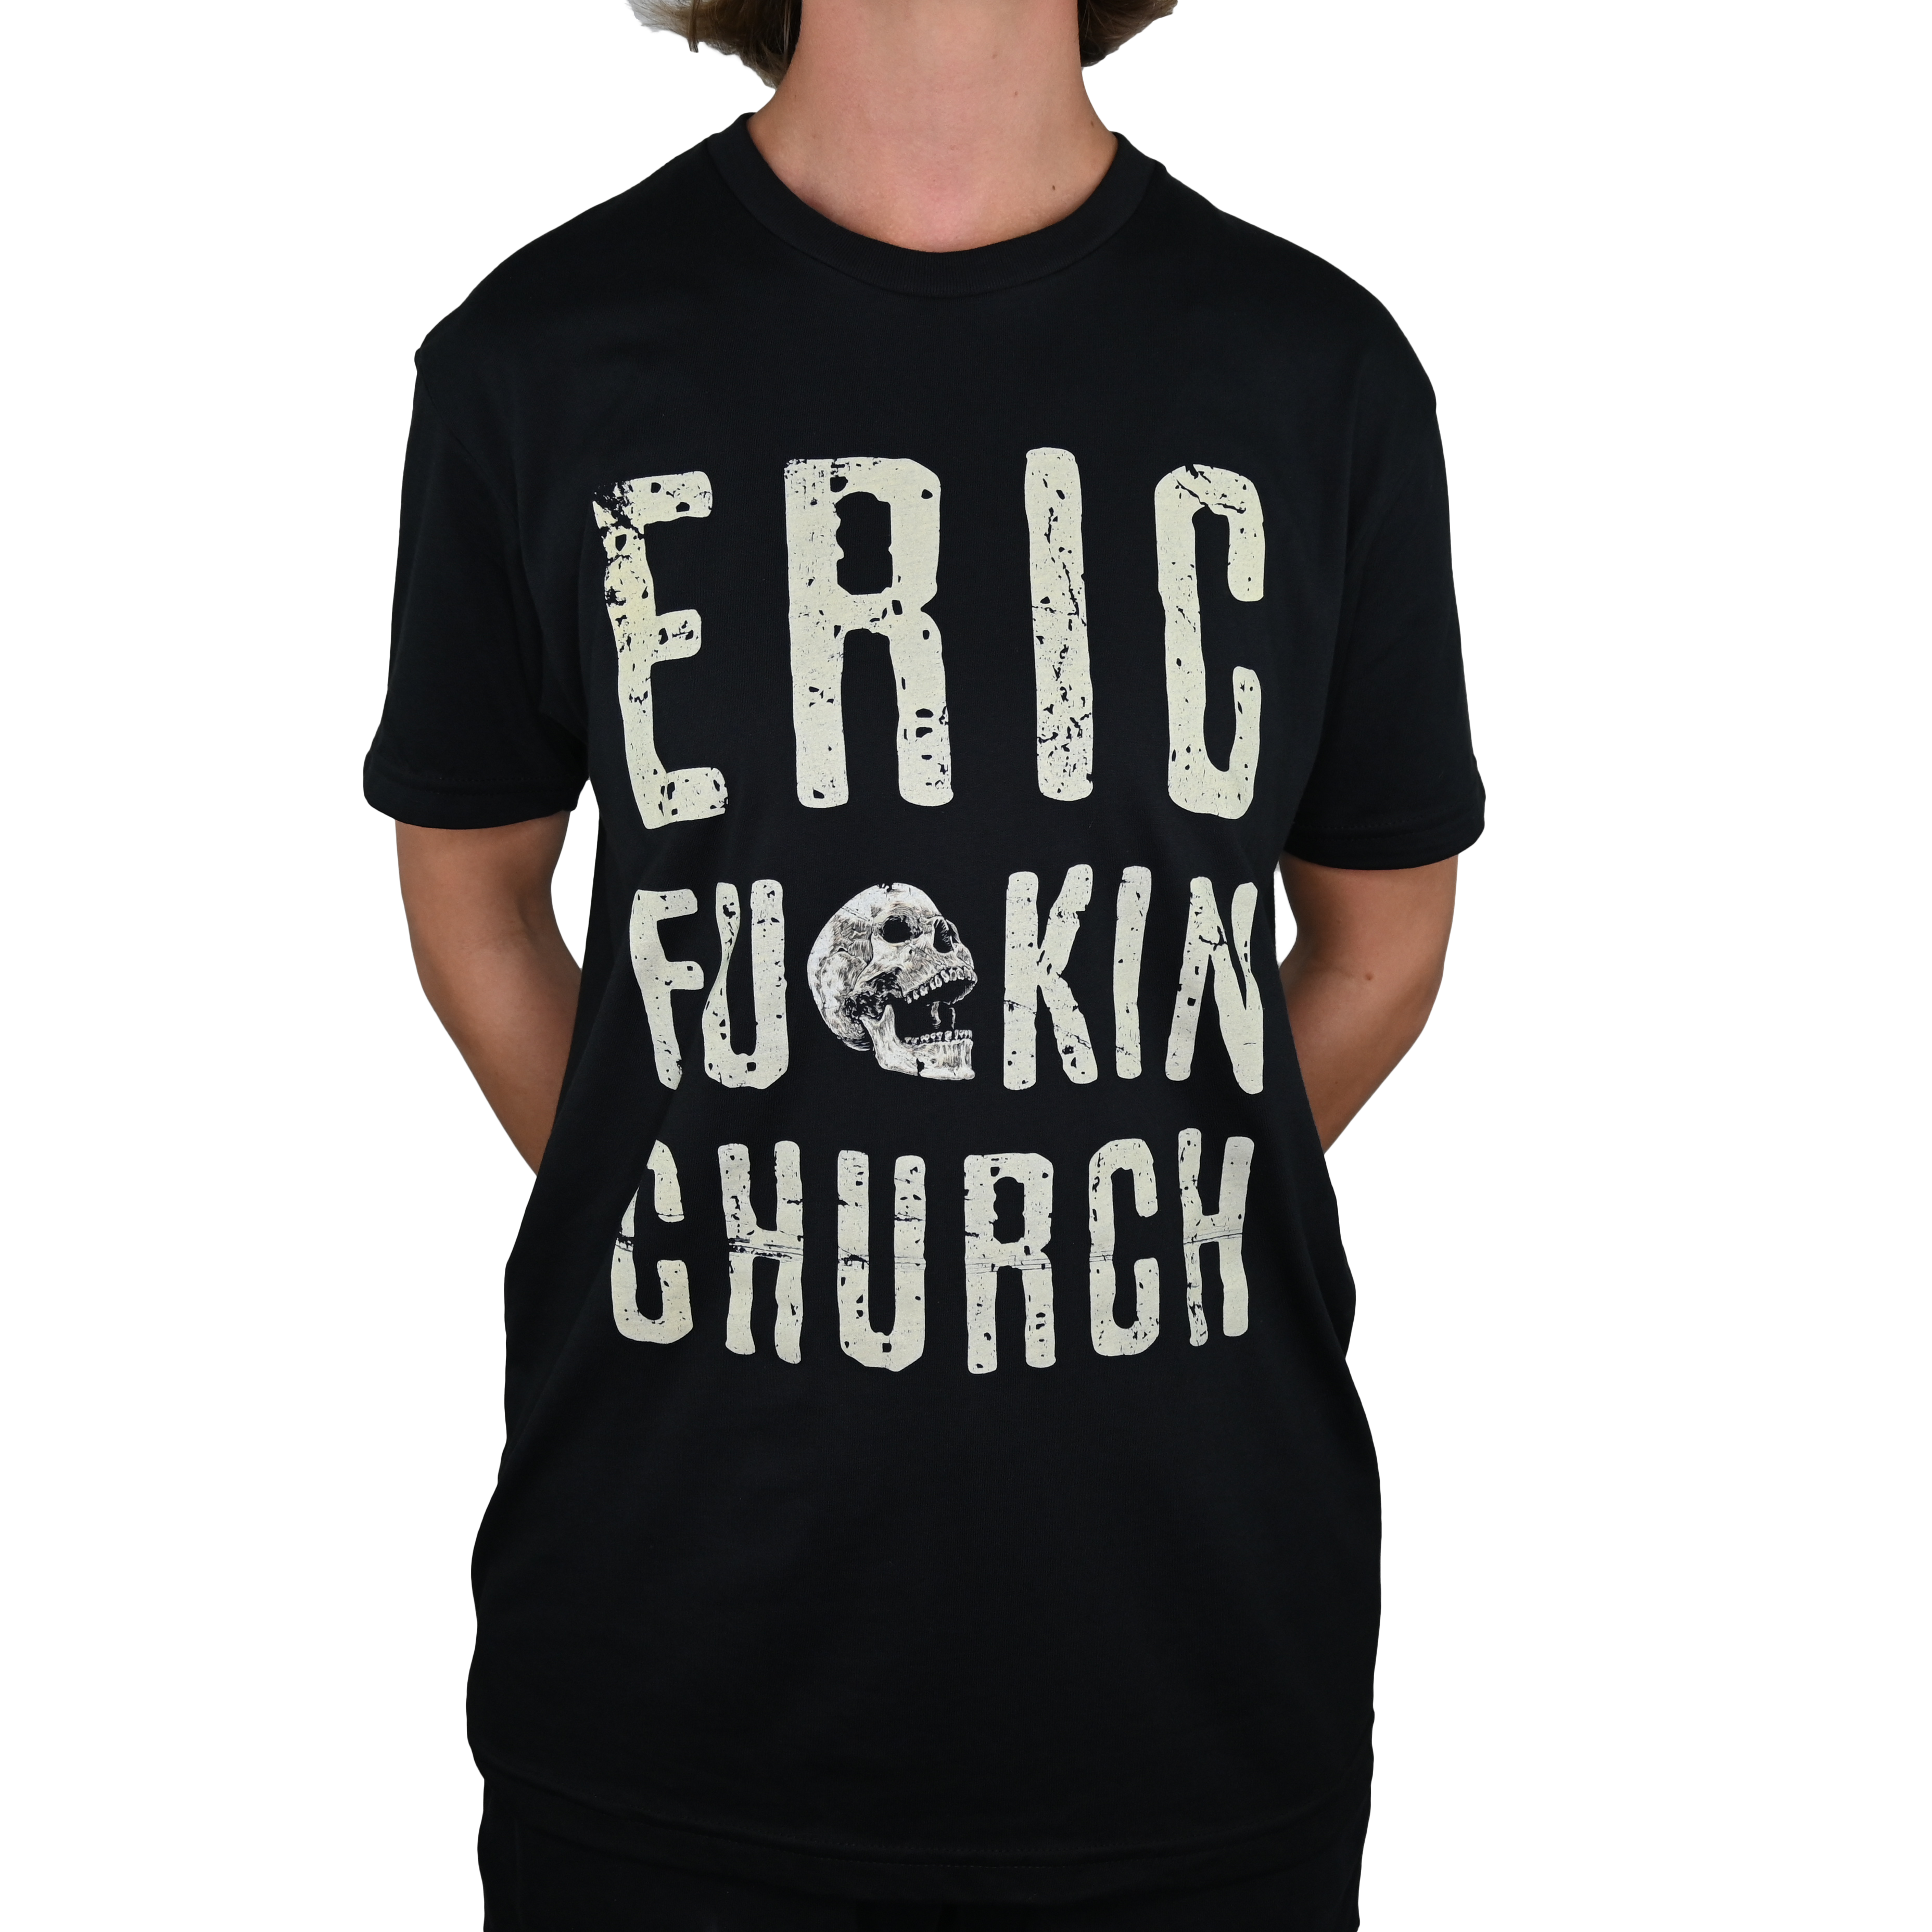 Eric Fu*ckin Church T-Shirt 2023